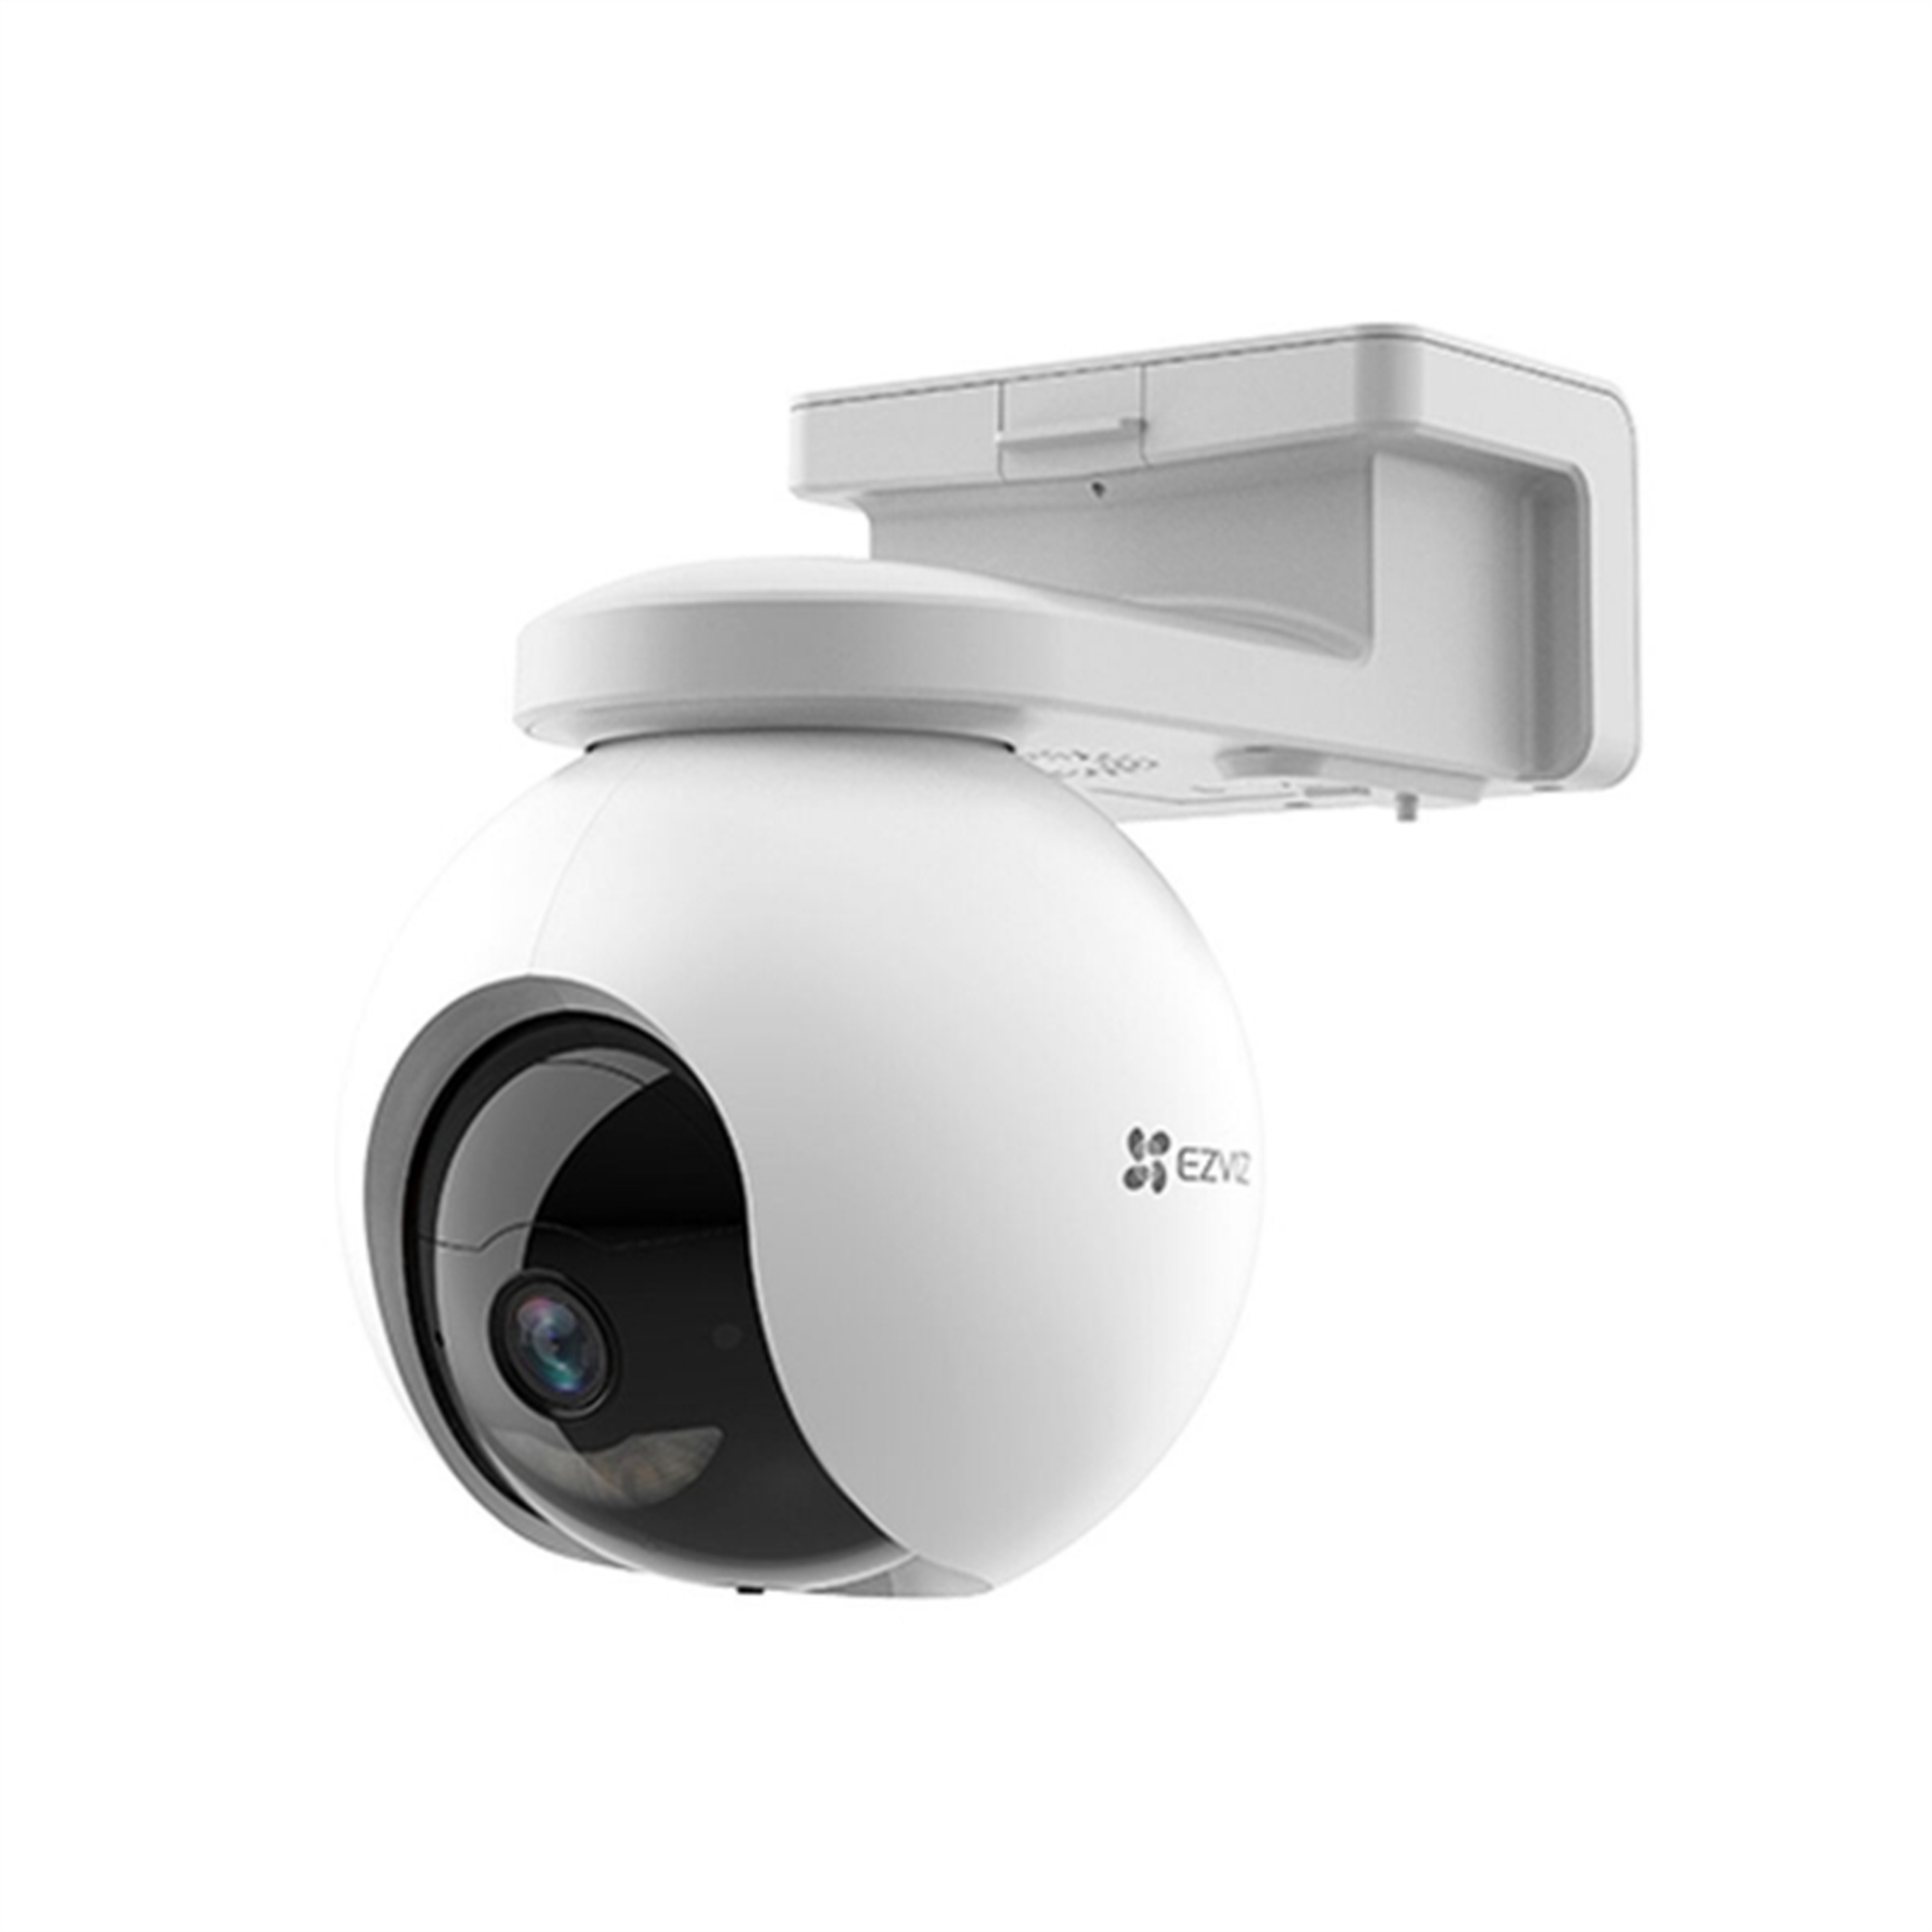 DOTMALL S9107079, Indoor-Webcam, Auflösung Pixel Video: 2560 1440 x